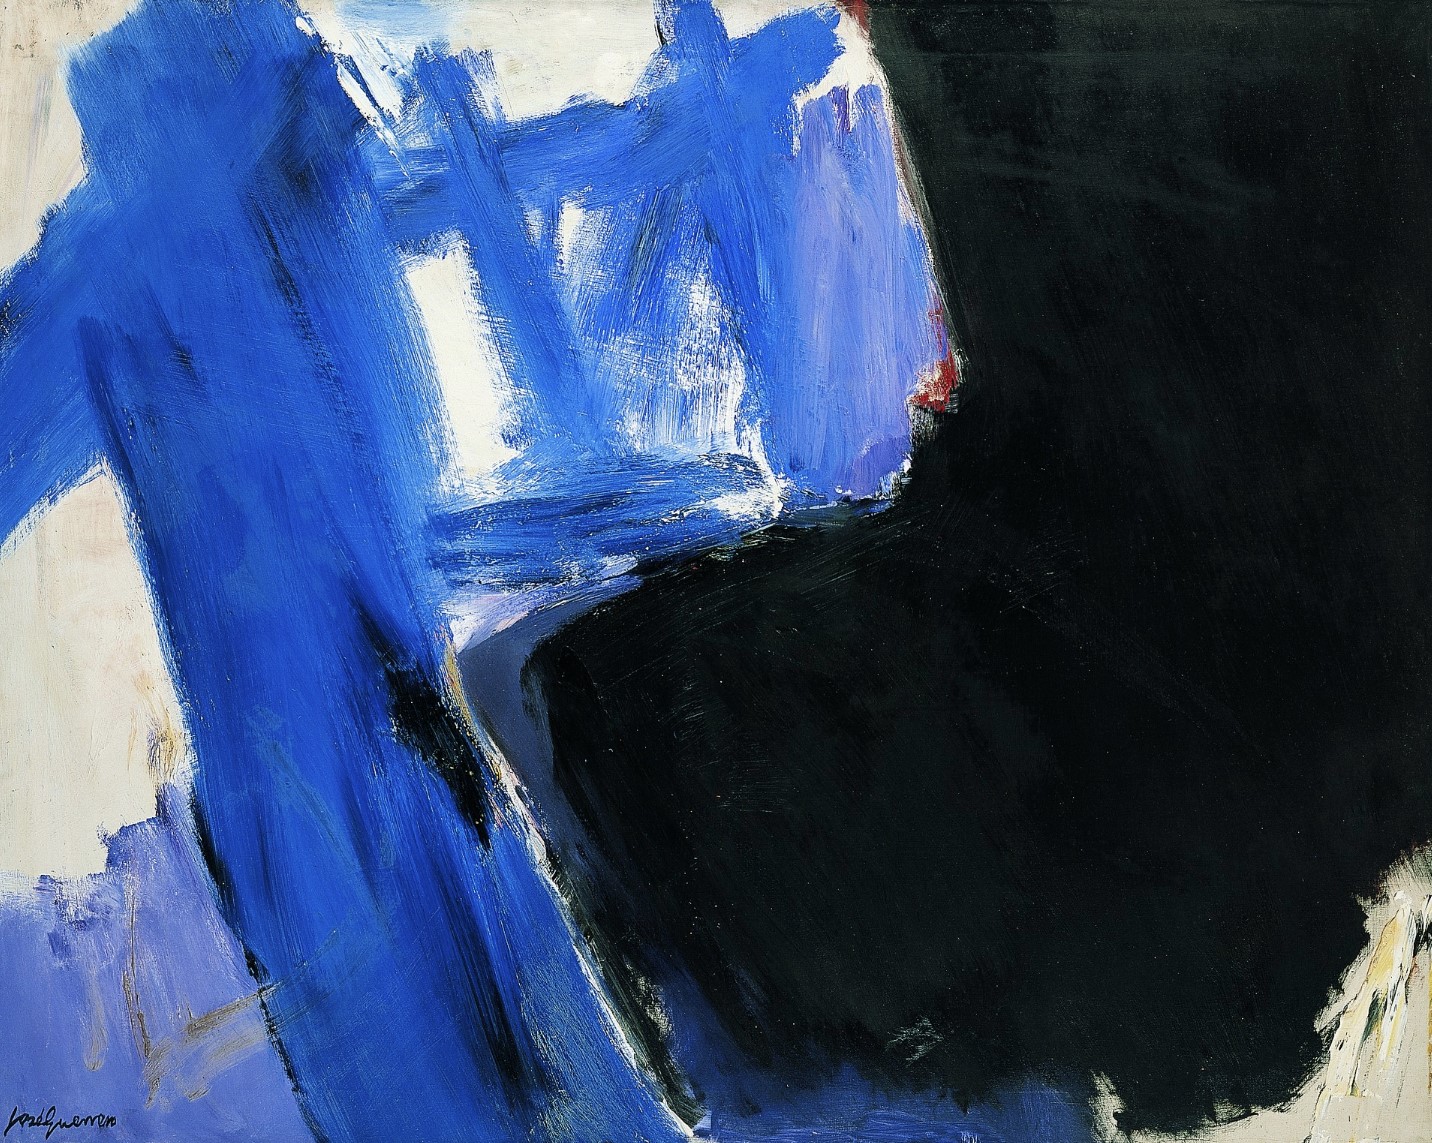 Homenaje a Kline, 1962. Óleo sobre lienzo, 121 x 152,5 cm. (GU128)